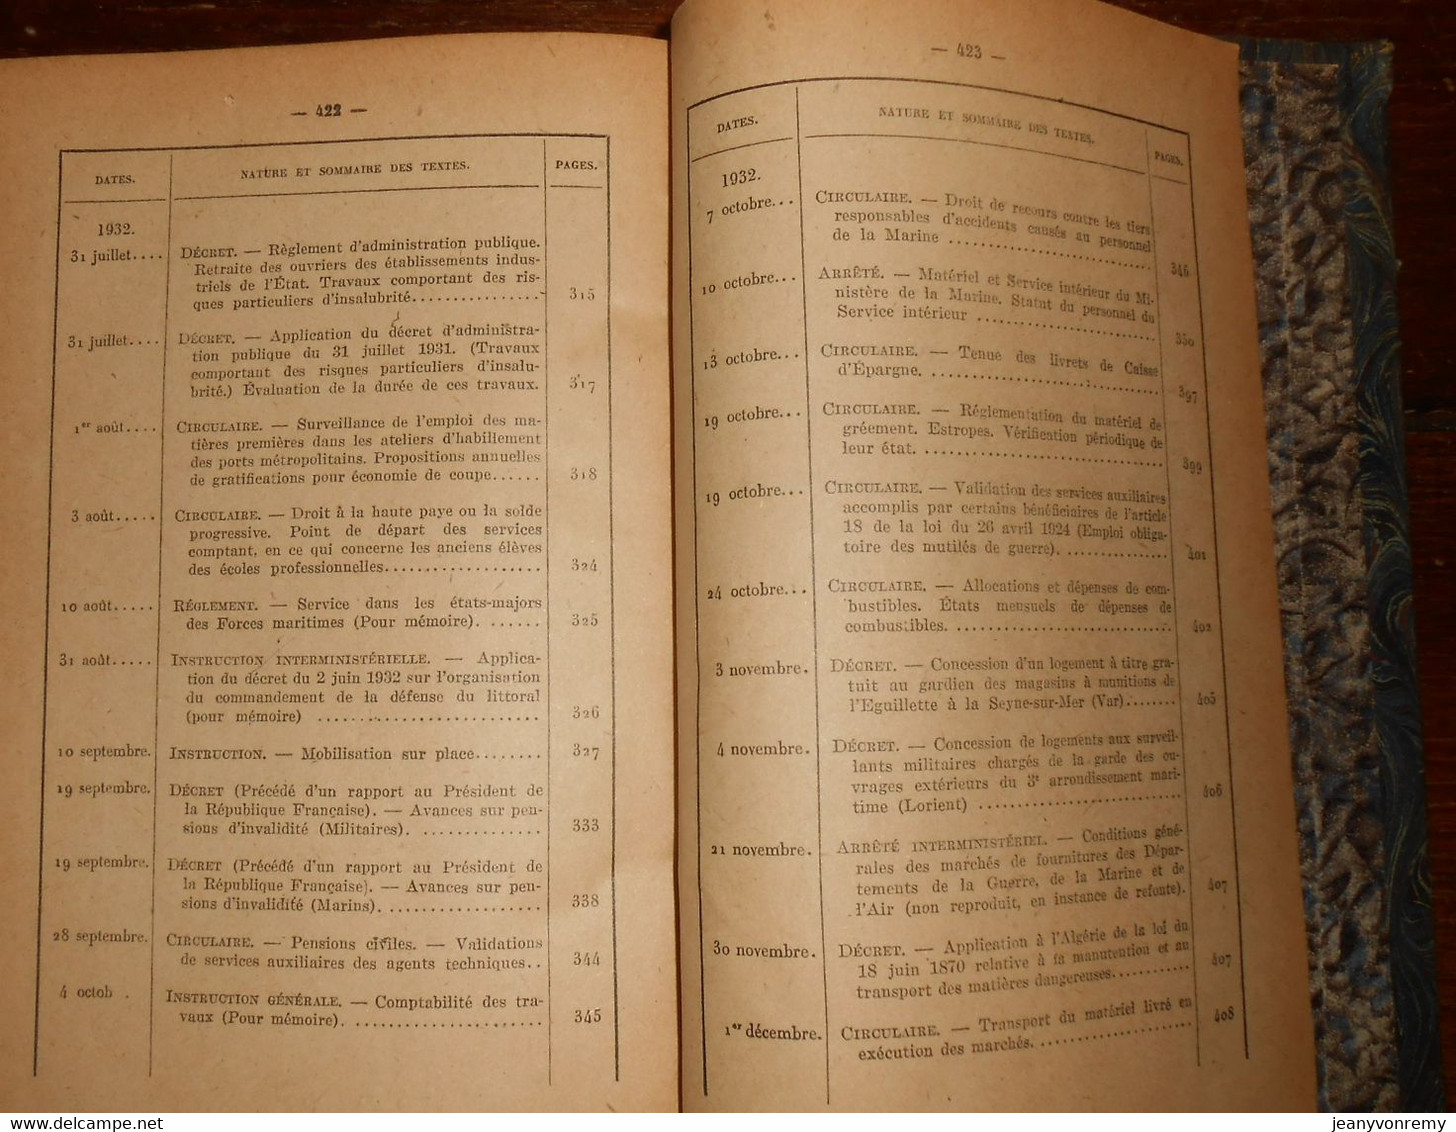 Bulletin Officiel de la Marine. 1er et 2ème semestres 1932. République française. 1948.